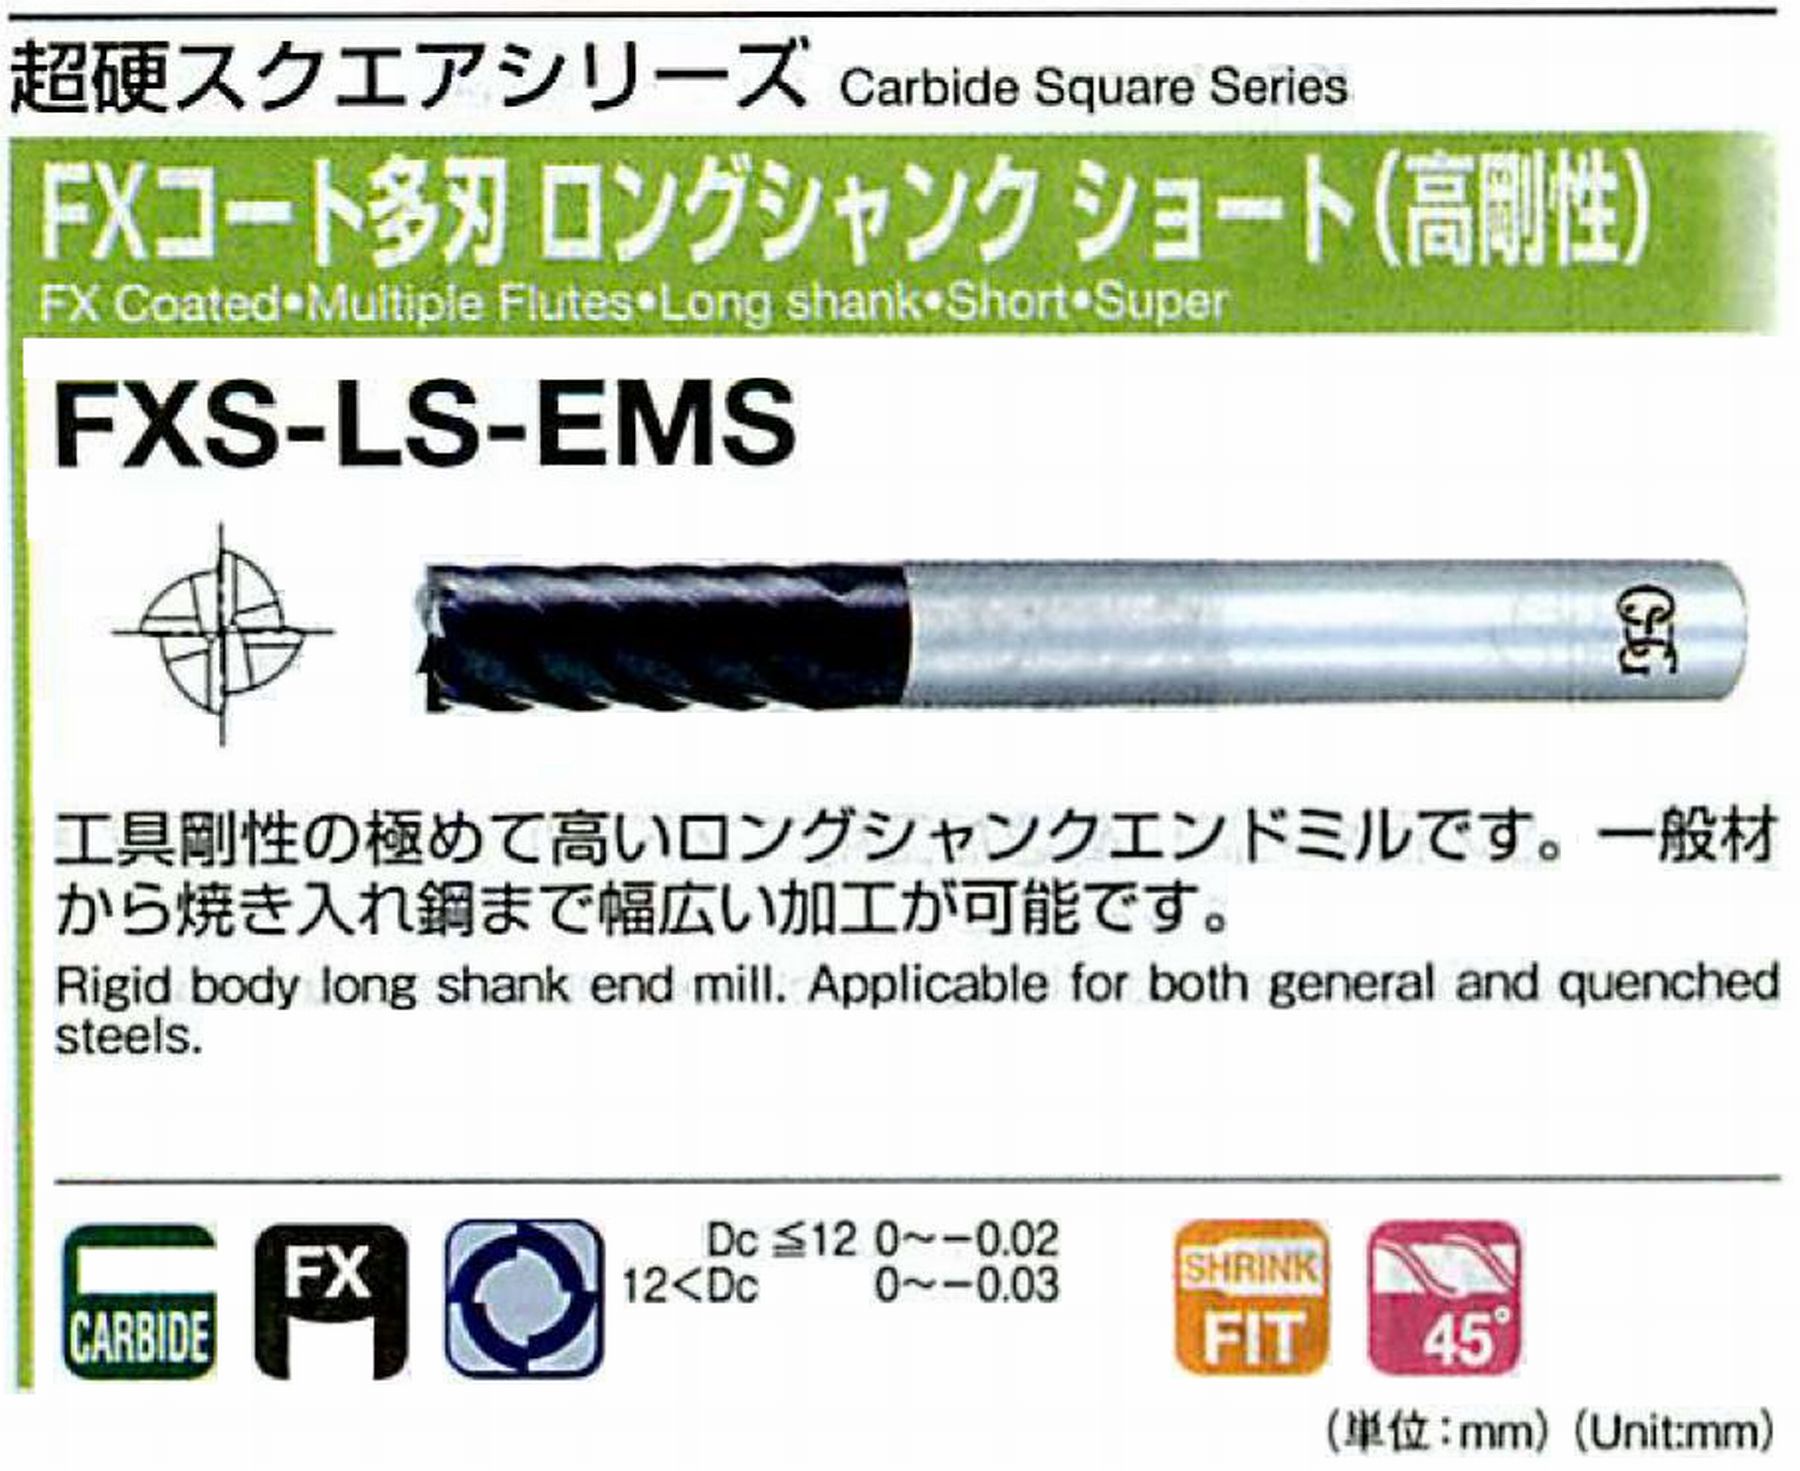 オーエスジー/OSG FXコート多刃 ロングシャンクショート(高剛性) FXS-LS-EMS 外径8 全長100 刃長20 シャンク径8mm 刃数6